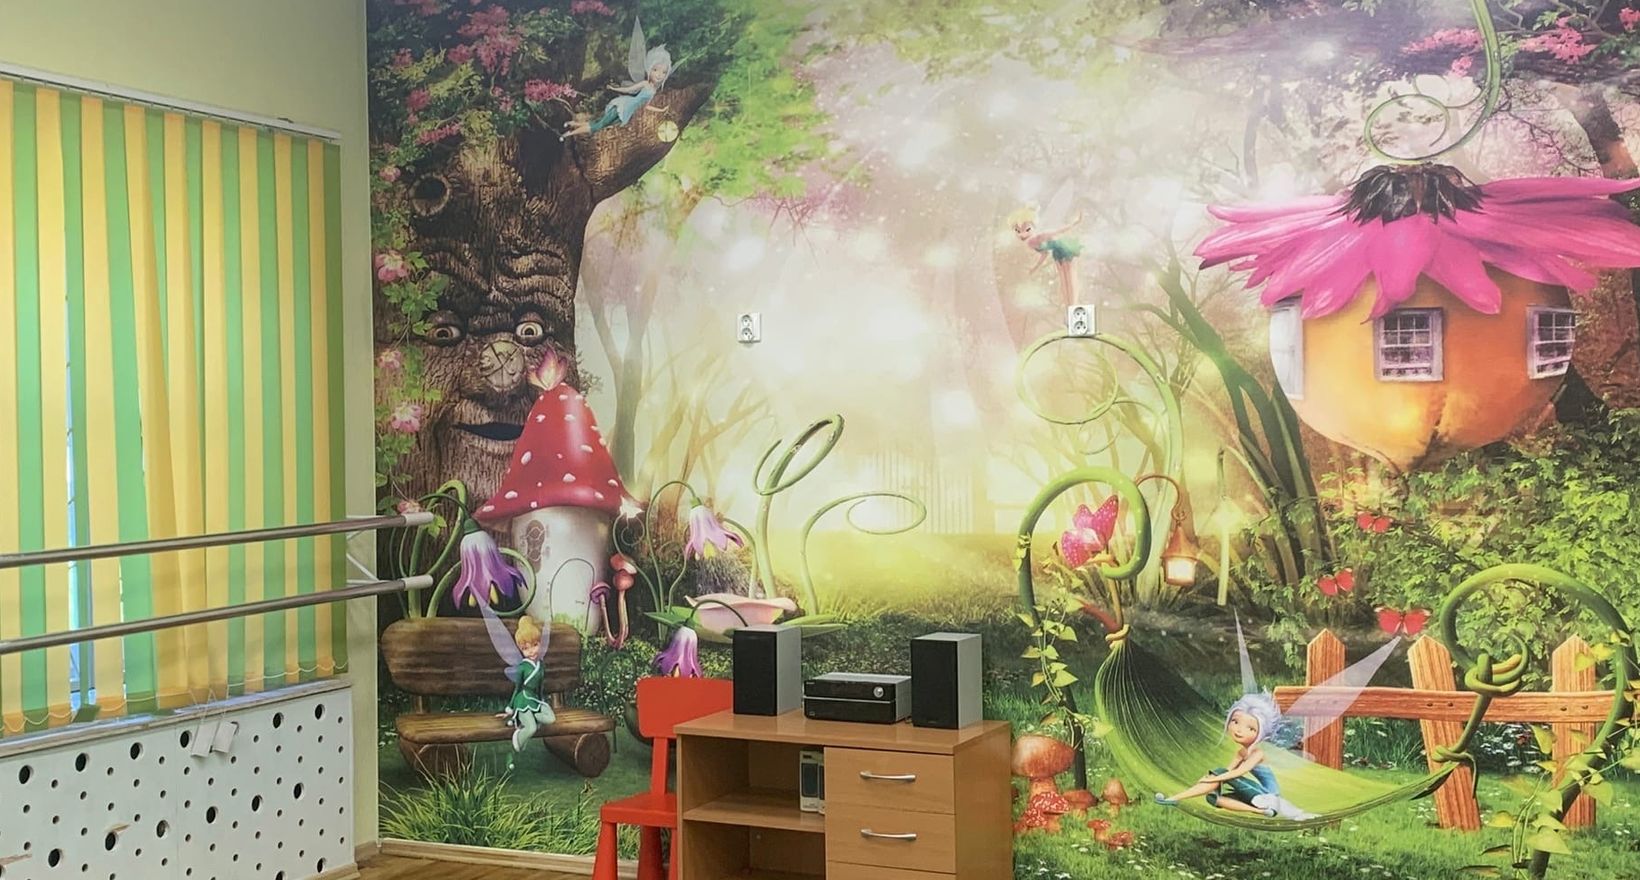 Центр детского эстрадного искусства "Эльфы"